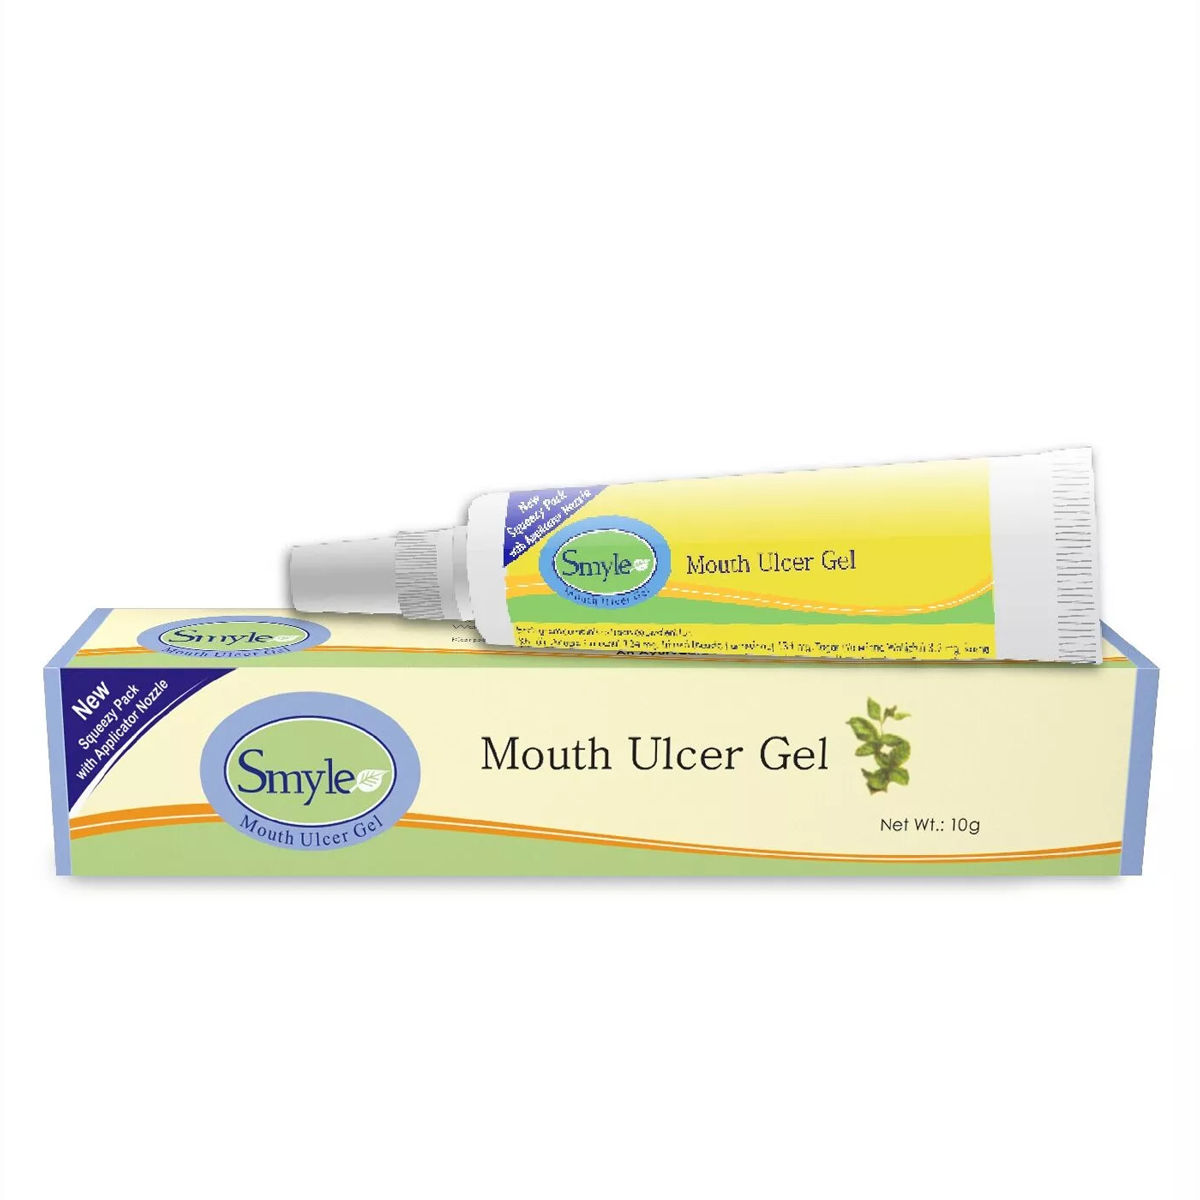 Smyle Mouth Ulcer Gel, 10 gm, Pack of 1 